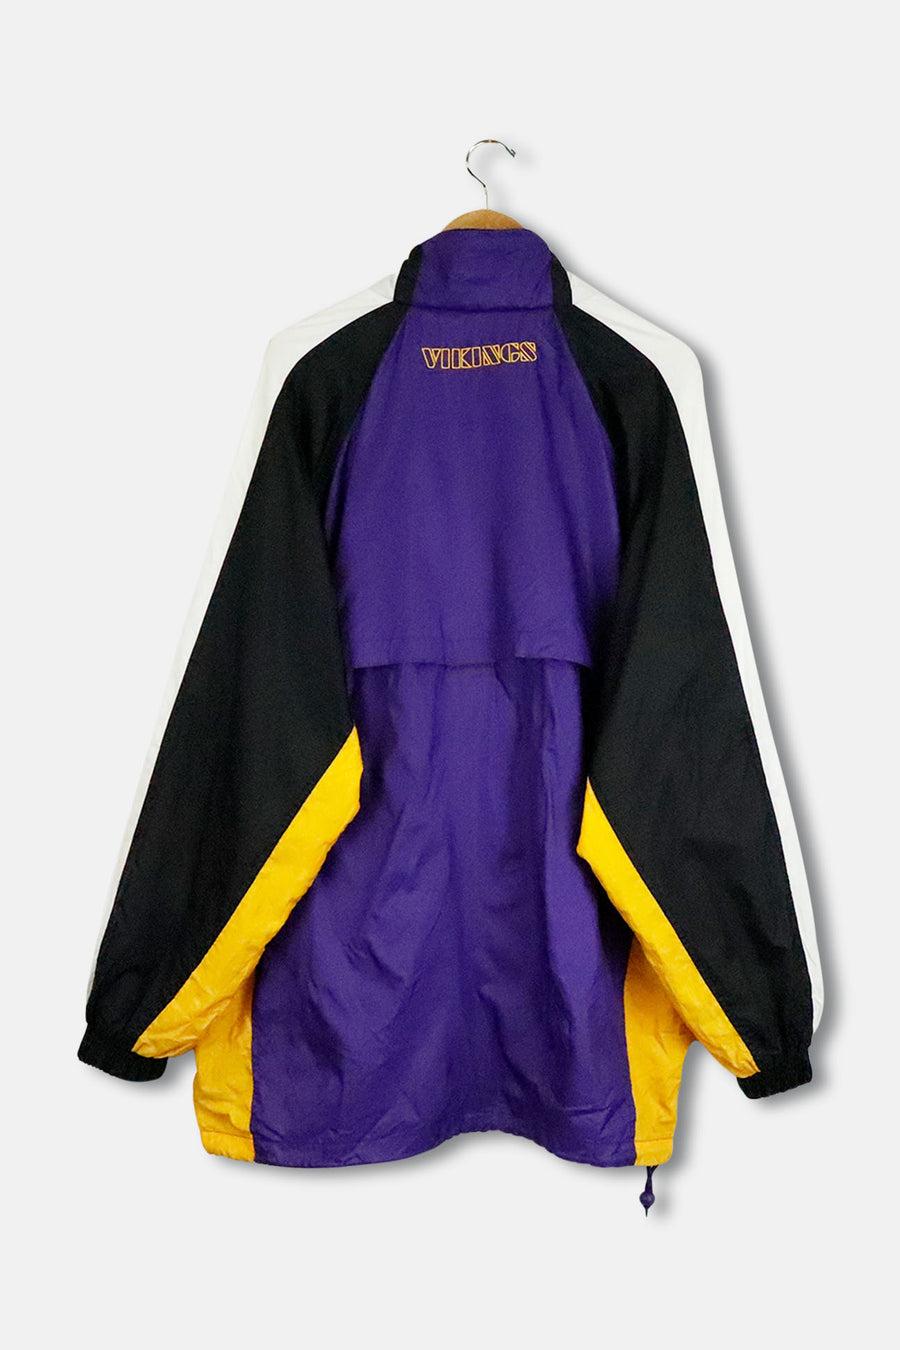 Vintage NFL Minnesota Vikings Jacket Sz L